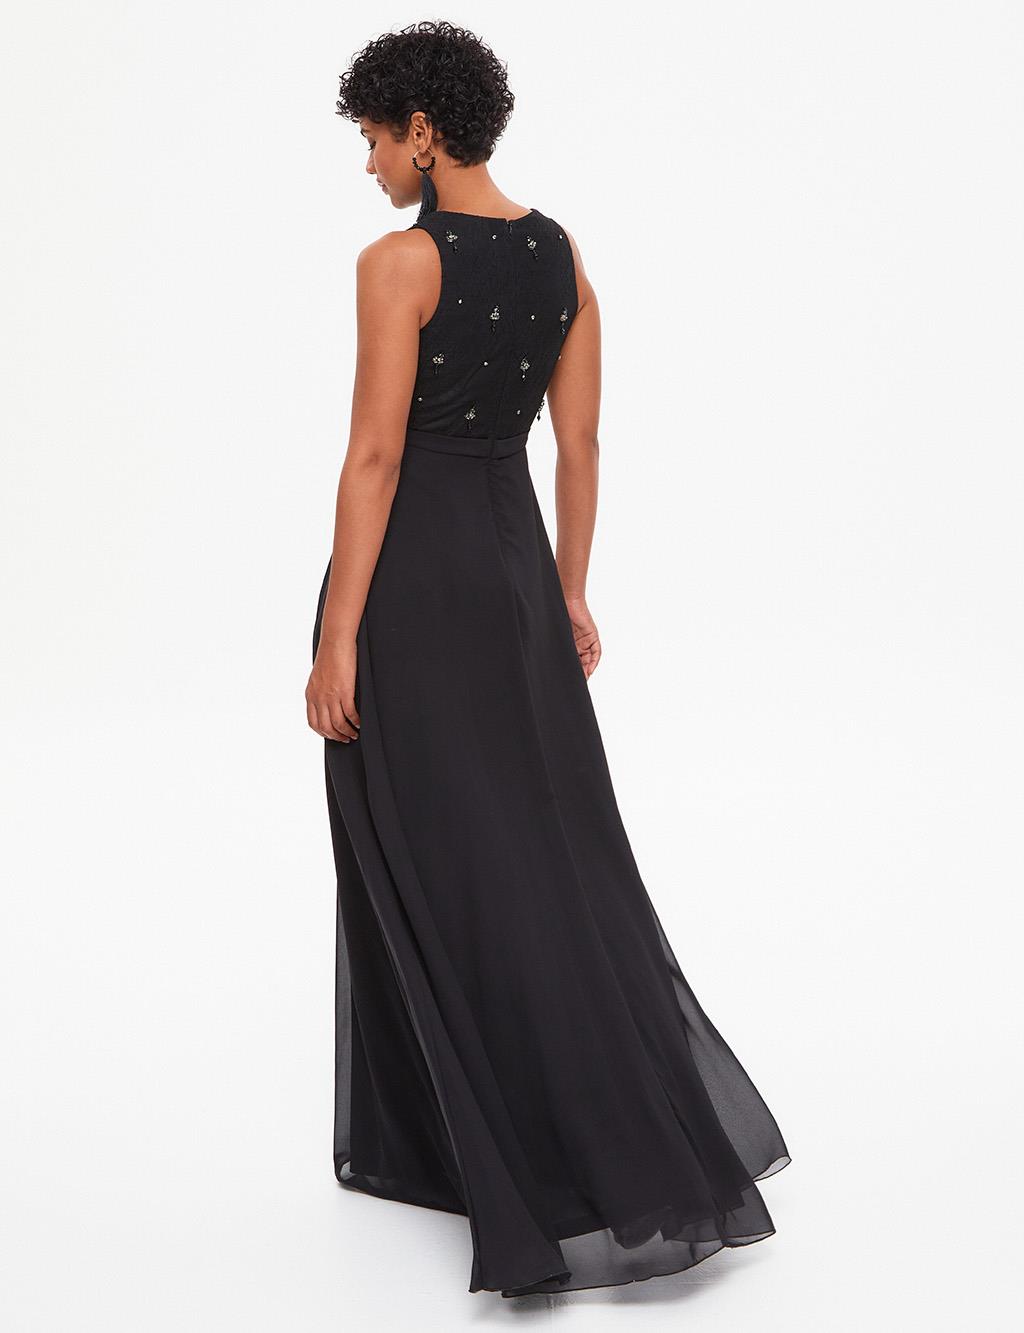 TIARA Illusion Collar Evening Dress Black